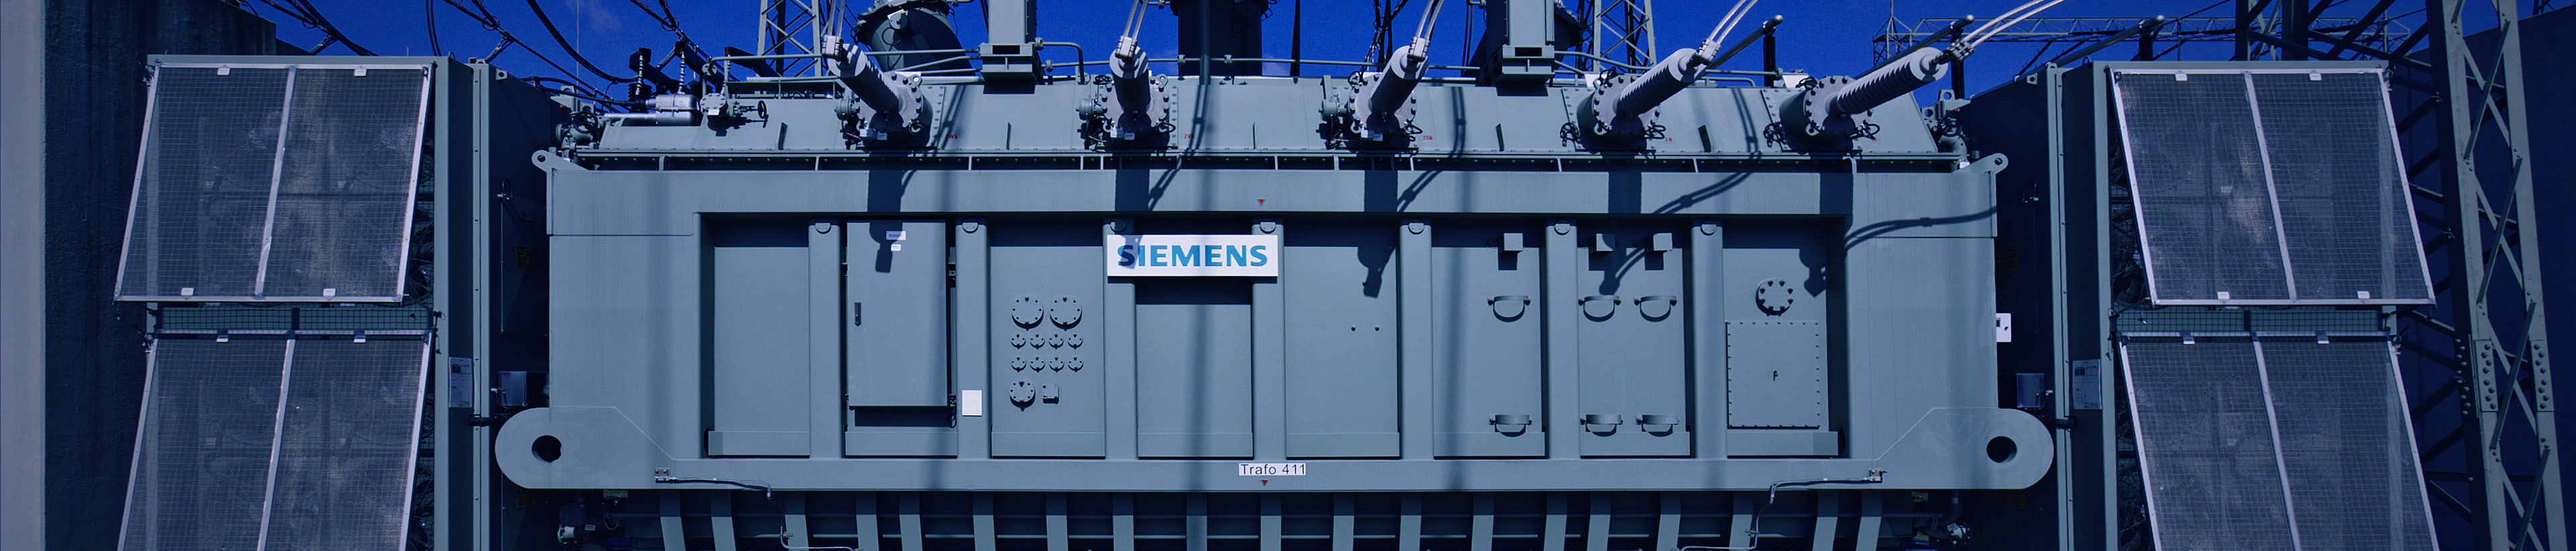 Siemens Oel-Transformator in Umspannanlage, blauer Himmel